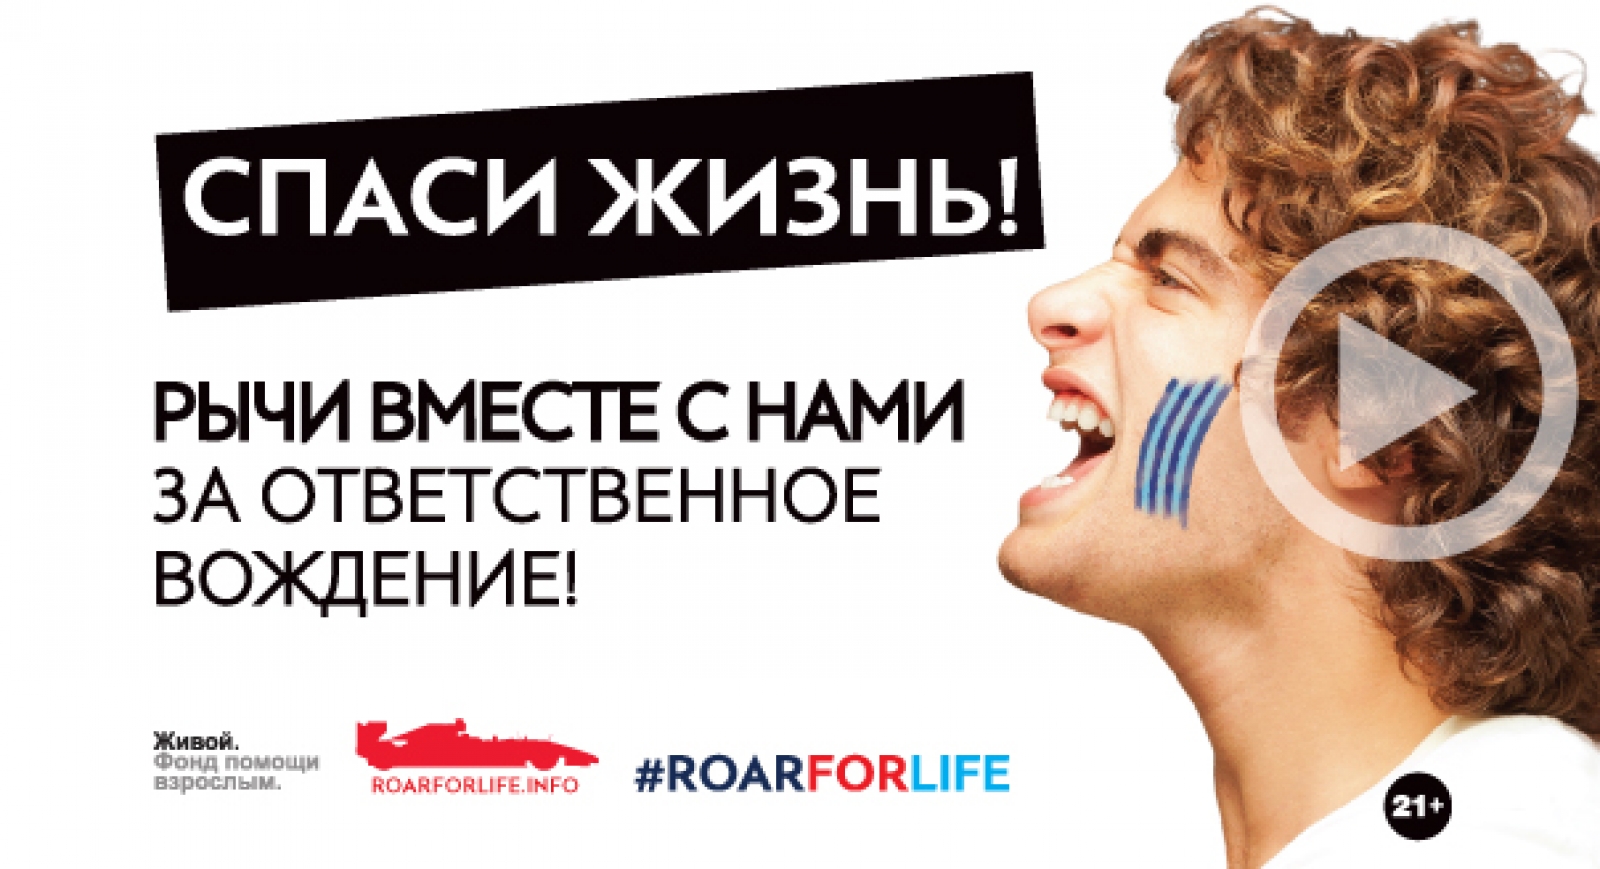 RoarForLife: За ответственное вождение